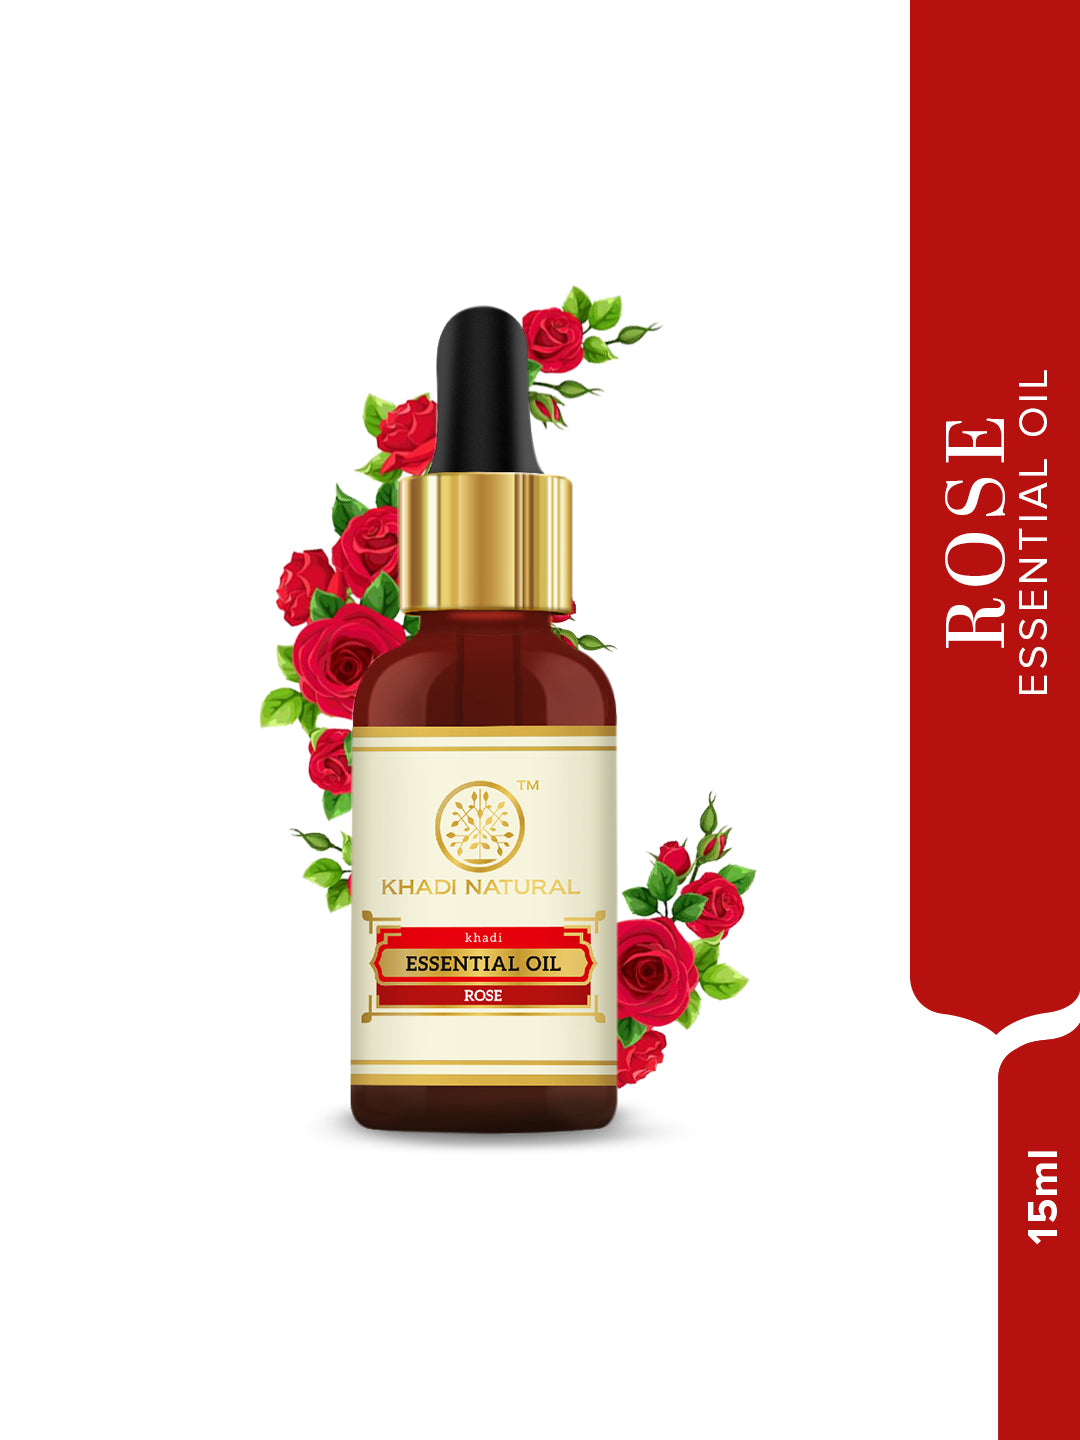 Khadi Natural Rose - Pure Essential Oil - 15 ml